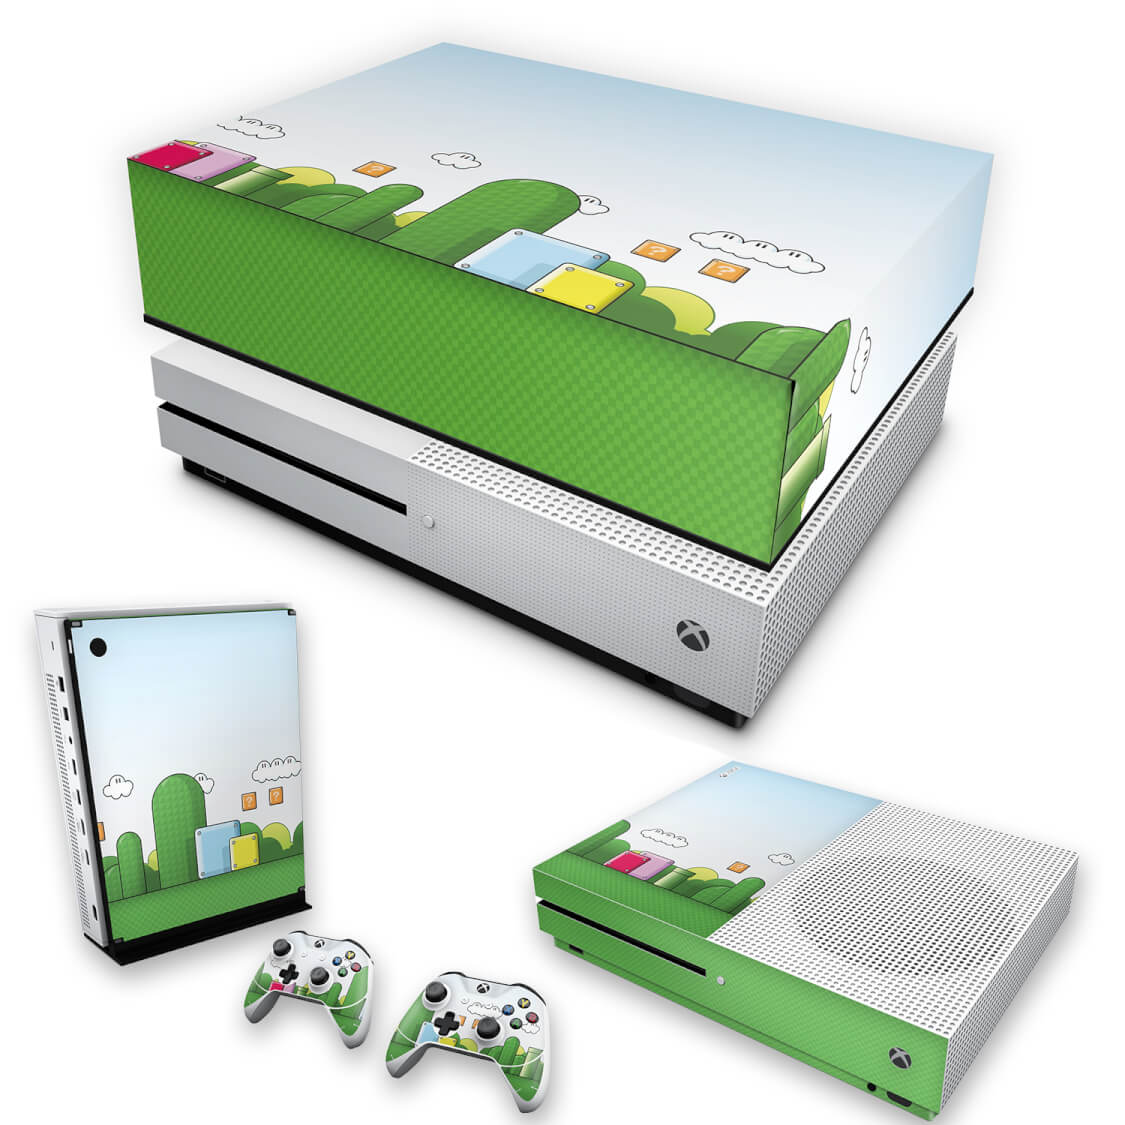 Xbox 360 Super Slim Capa Anti Poeira - Super Mario Bros. - Pop